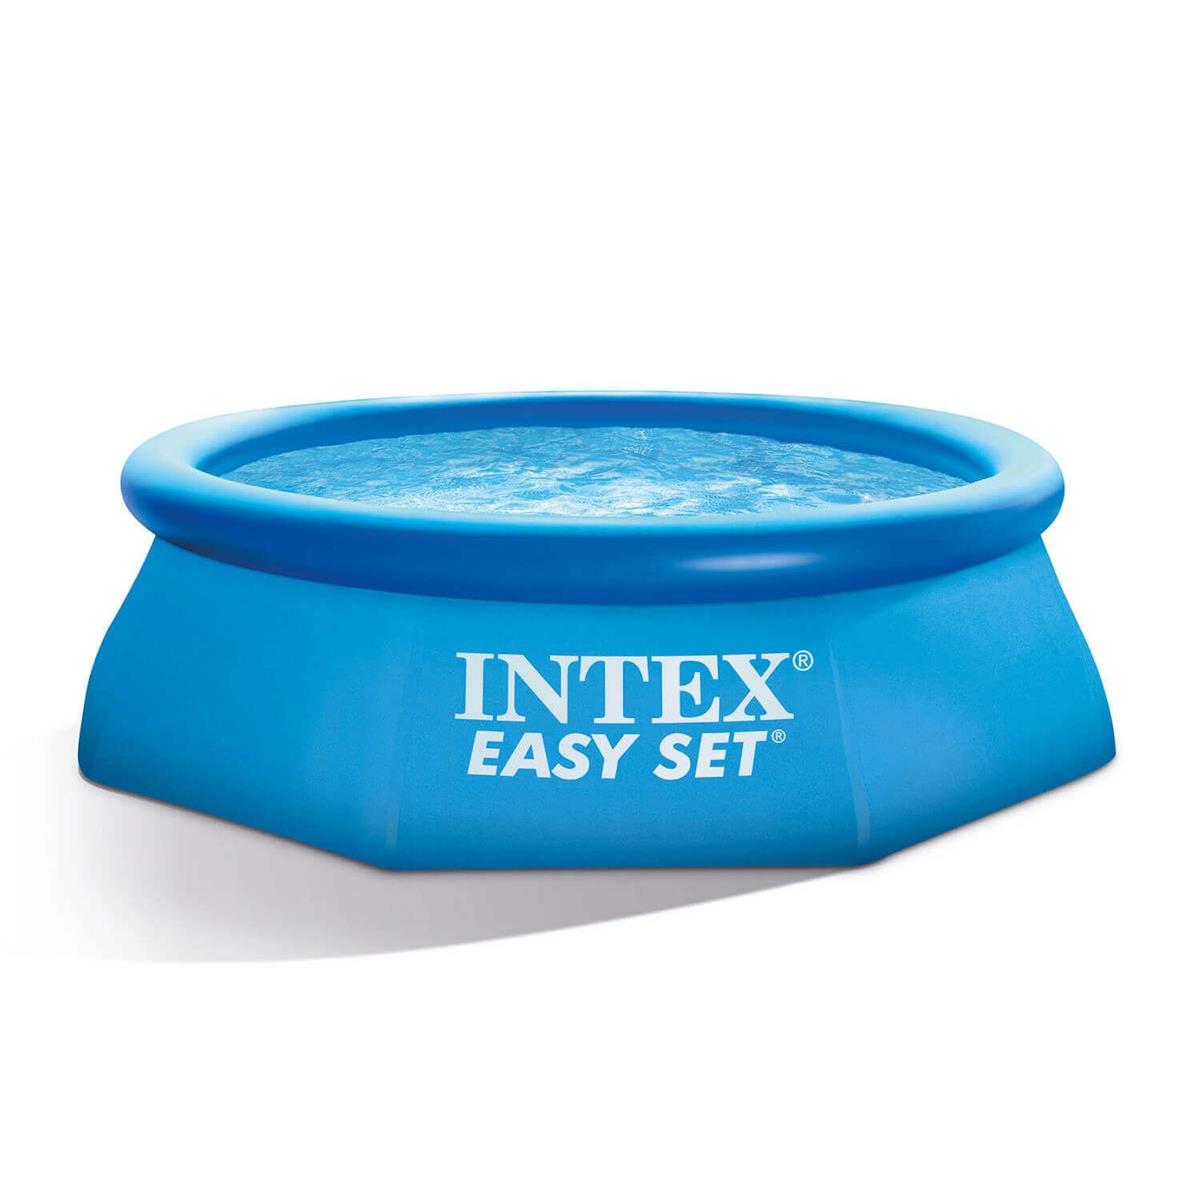 Бассейн Easy Set 3,05 х 0,61 м (28116) INTEX бассейн надувной intex 244х61 см easy set 28106np 1942 л